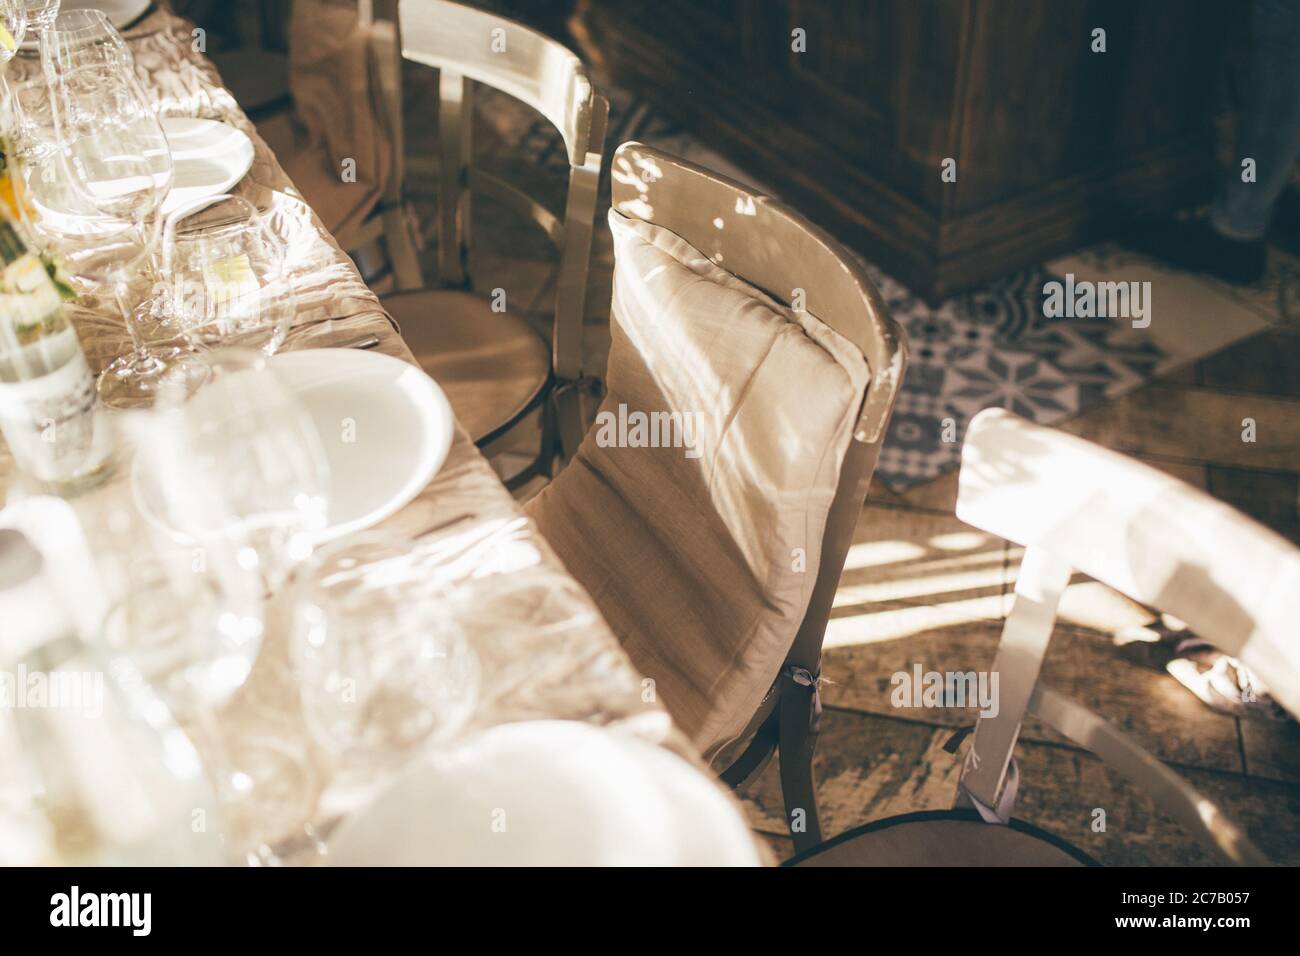 Mariage. Banquet. Les chaises et la table pour les clients, décorées de bougies, servis avec des couverts et de la vaisselle et couverts d'une nappe. La table Banque D'Images